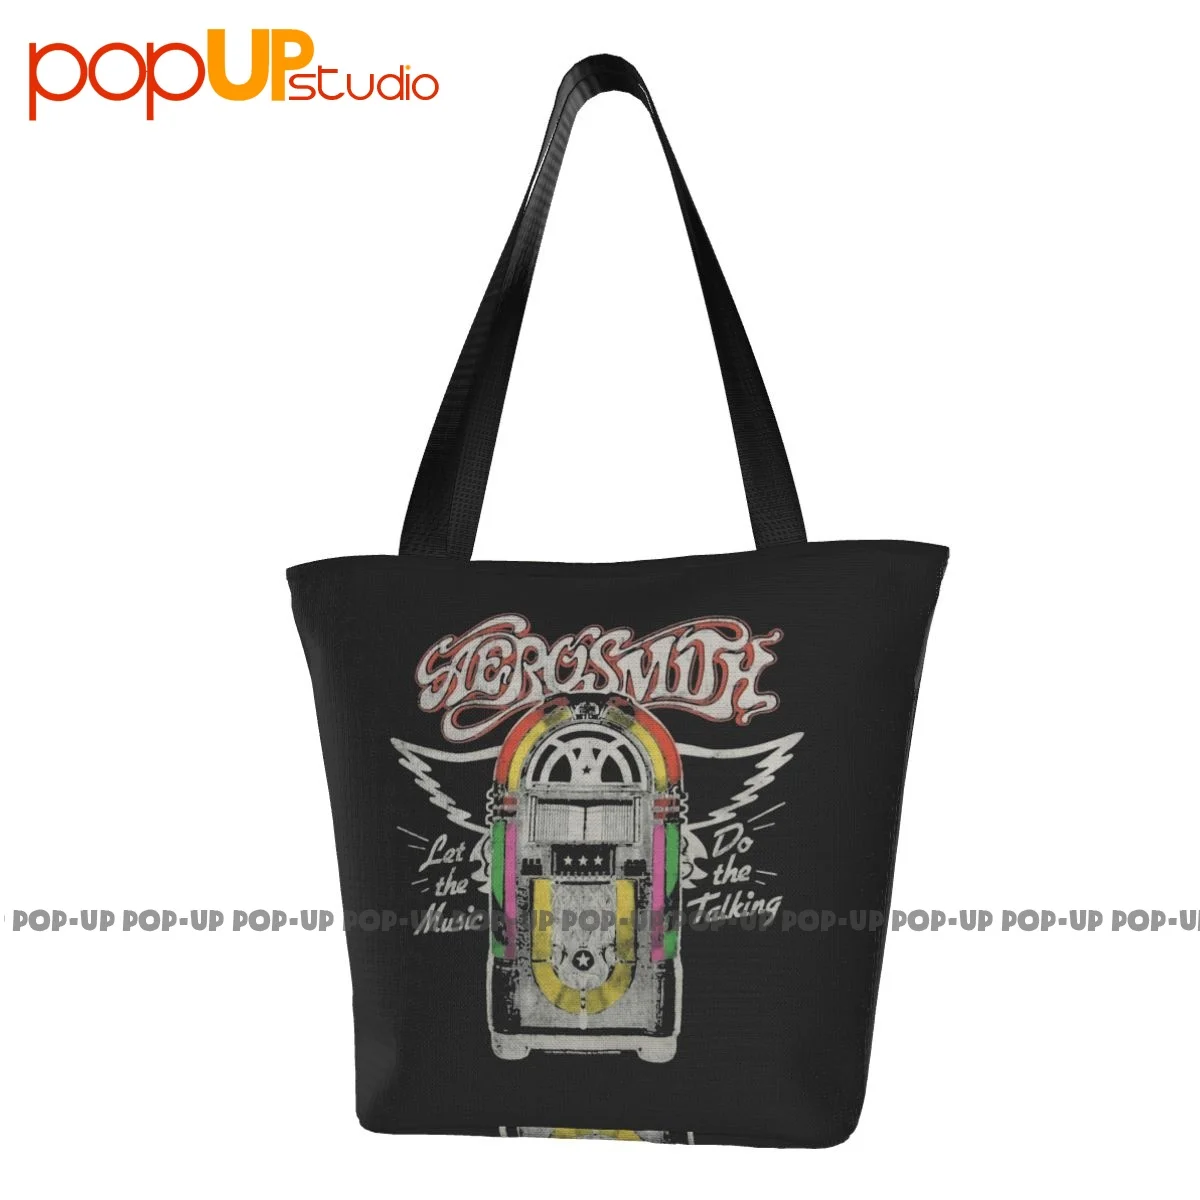 Aerosmith, Пусть музыкальный автомат говорит, рок-группа, модные сумки, портативная хозяйственная сумка большой емкости